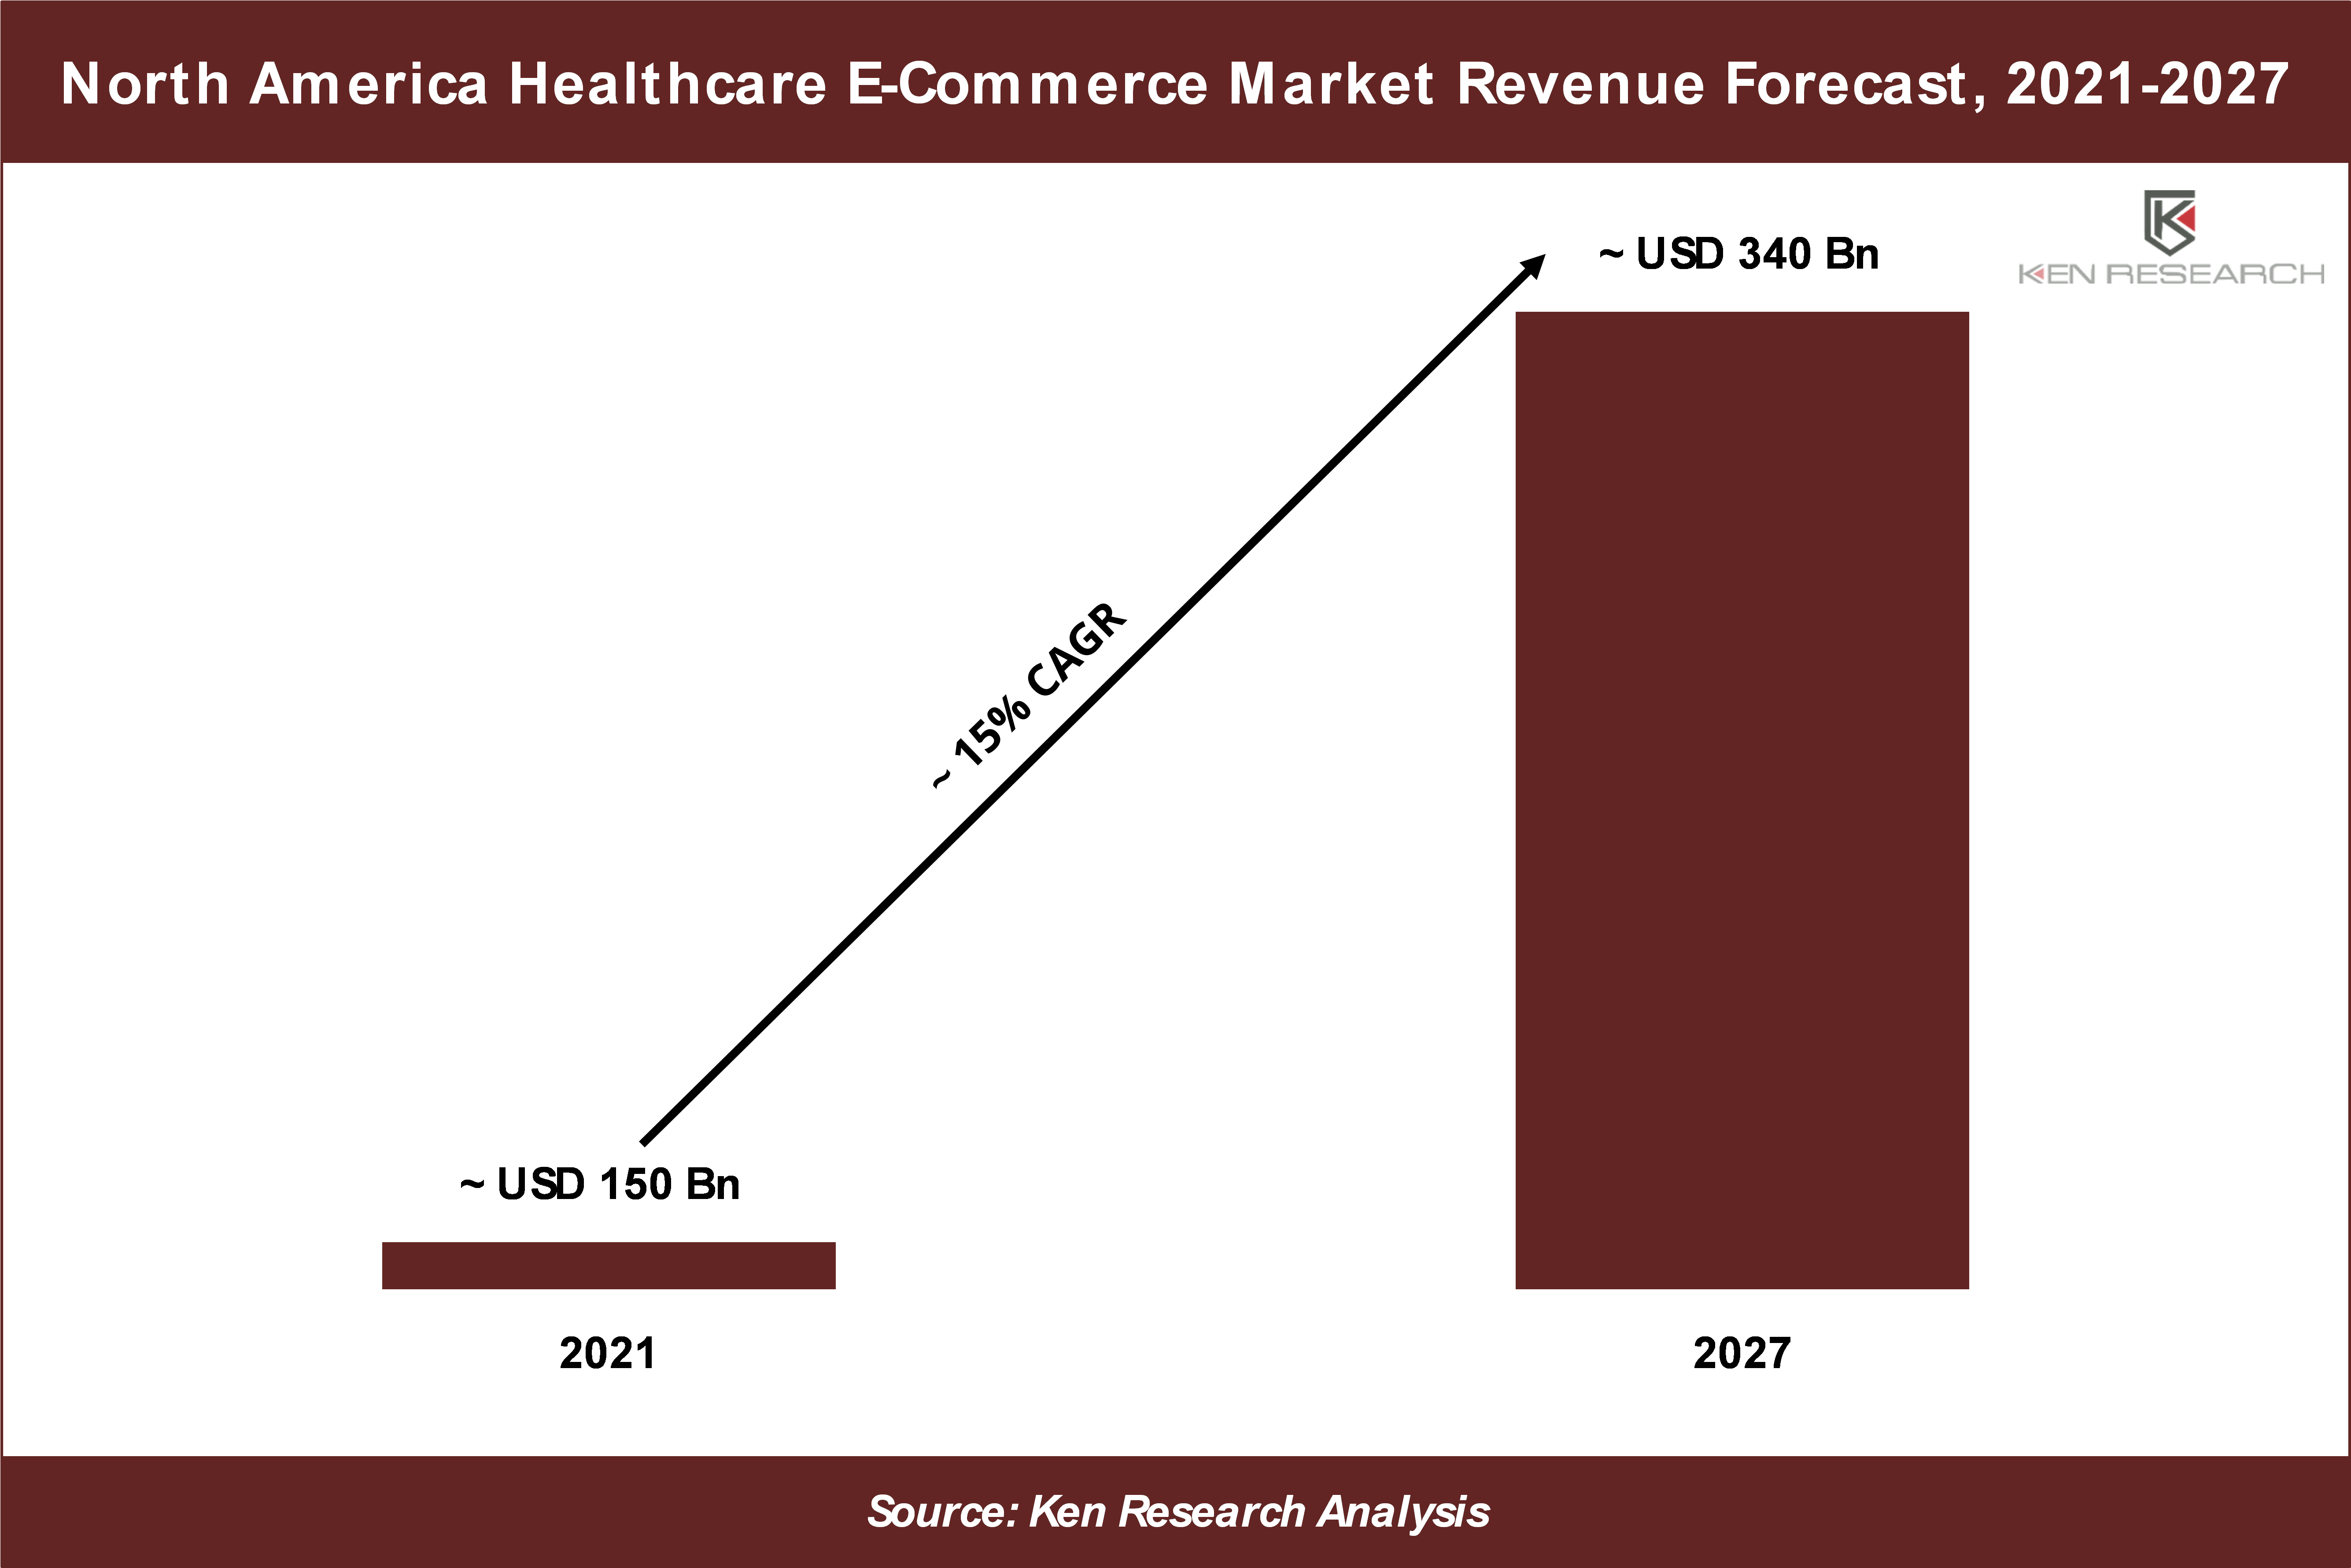 North America Healthcare E-Commerce Market Revenue Forecast